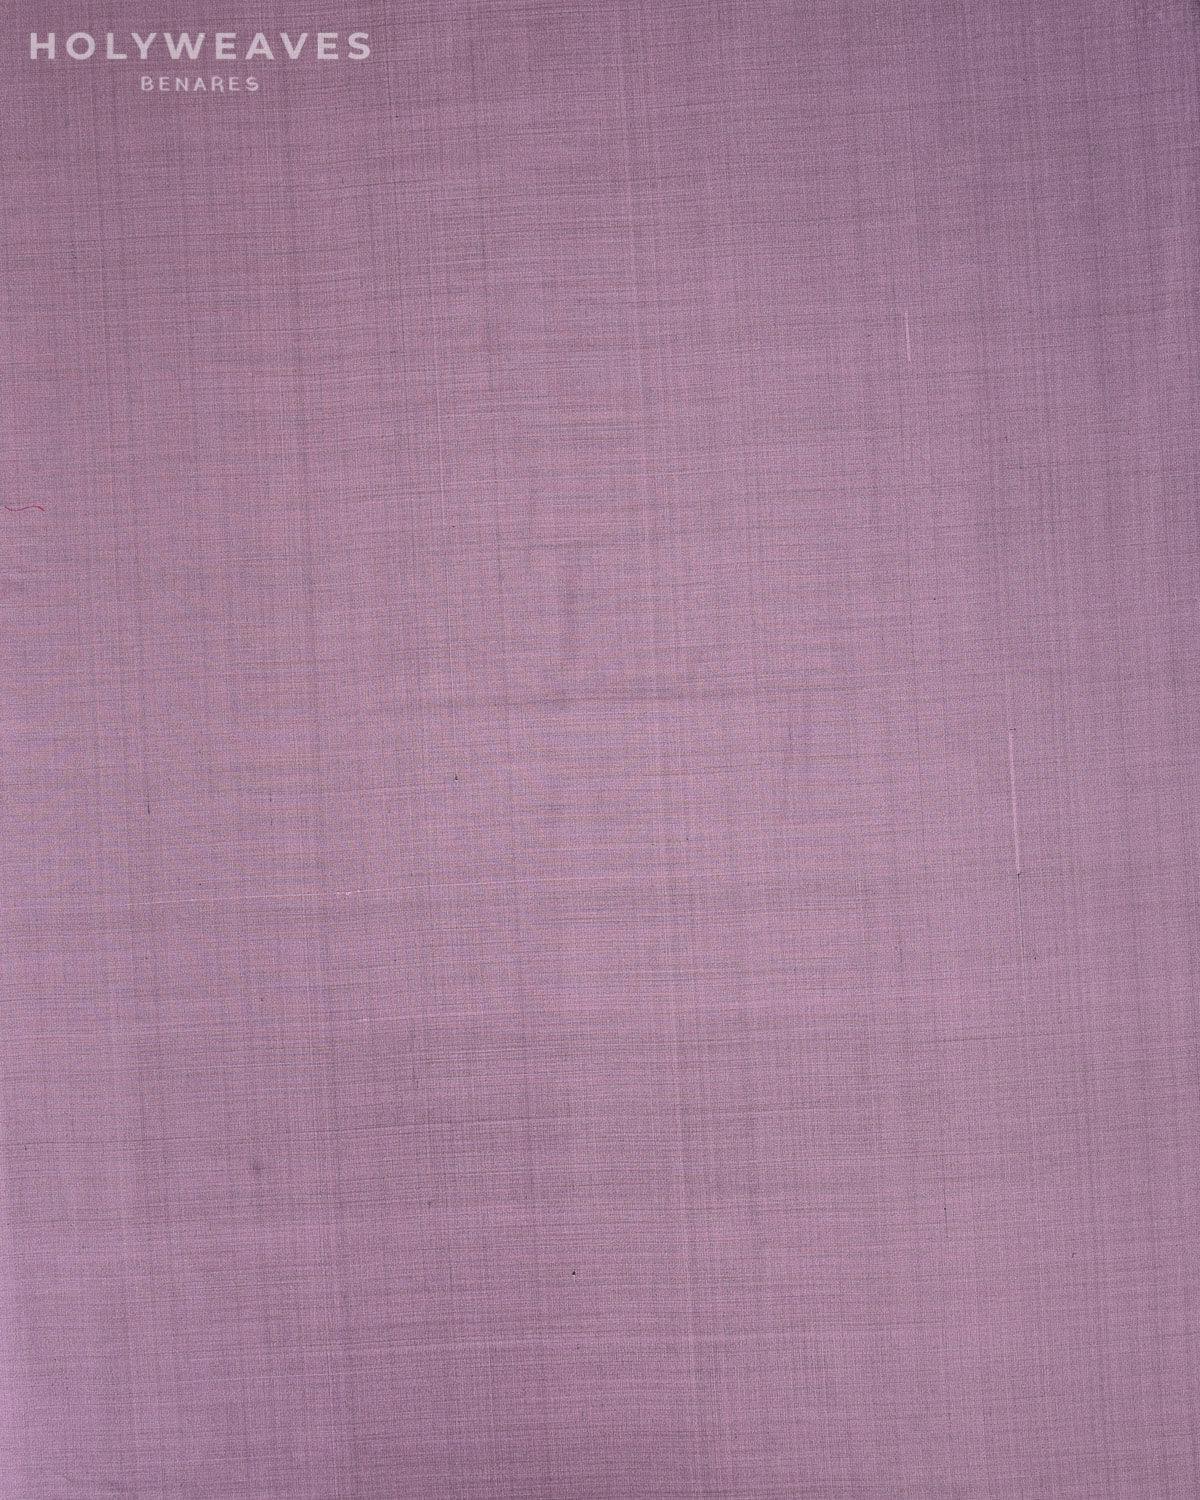 English Lavender Banarasi Plain Woven Spun Silk Fabric - By HolyWeaves, Benares